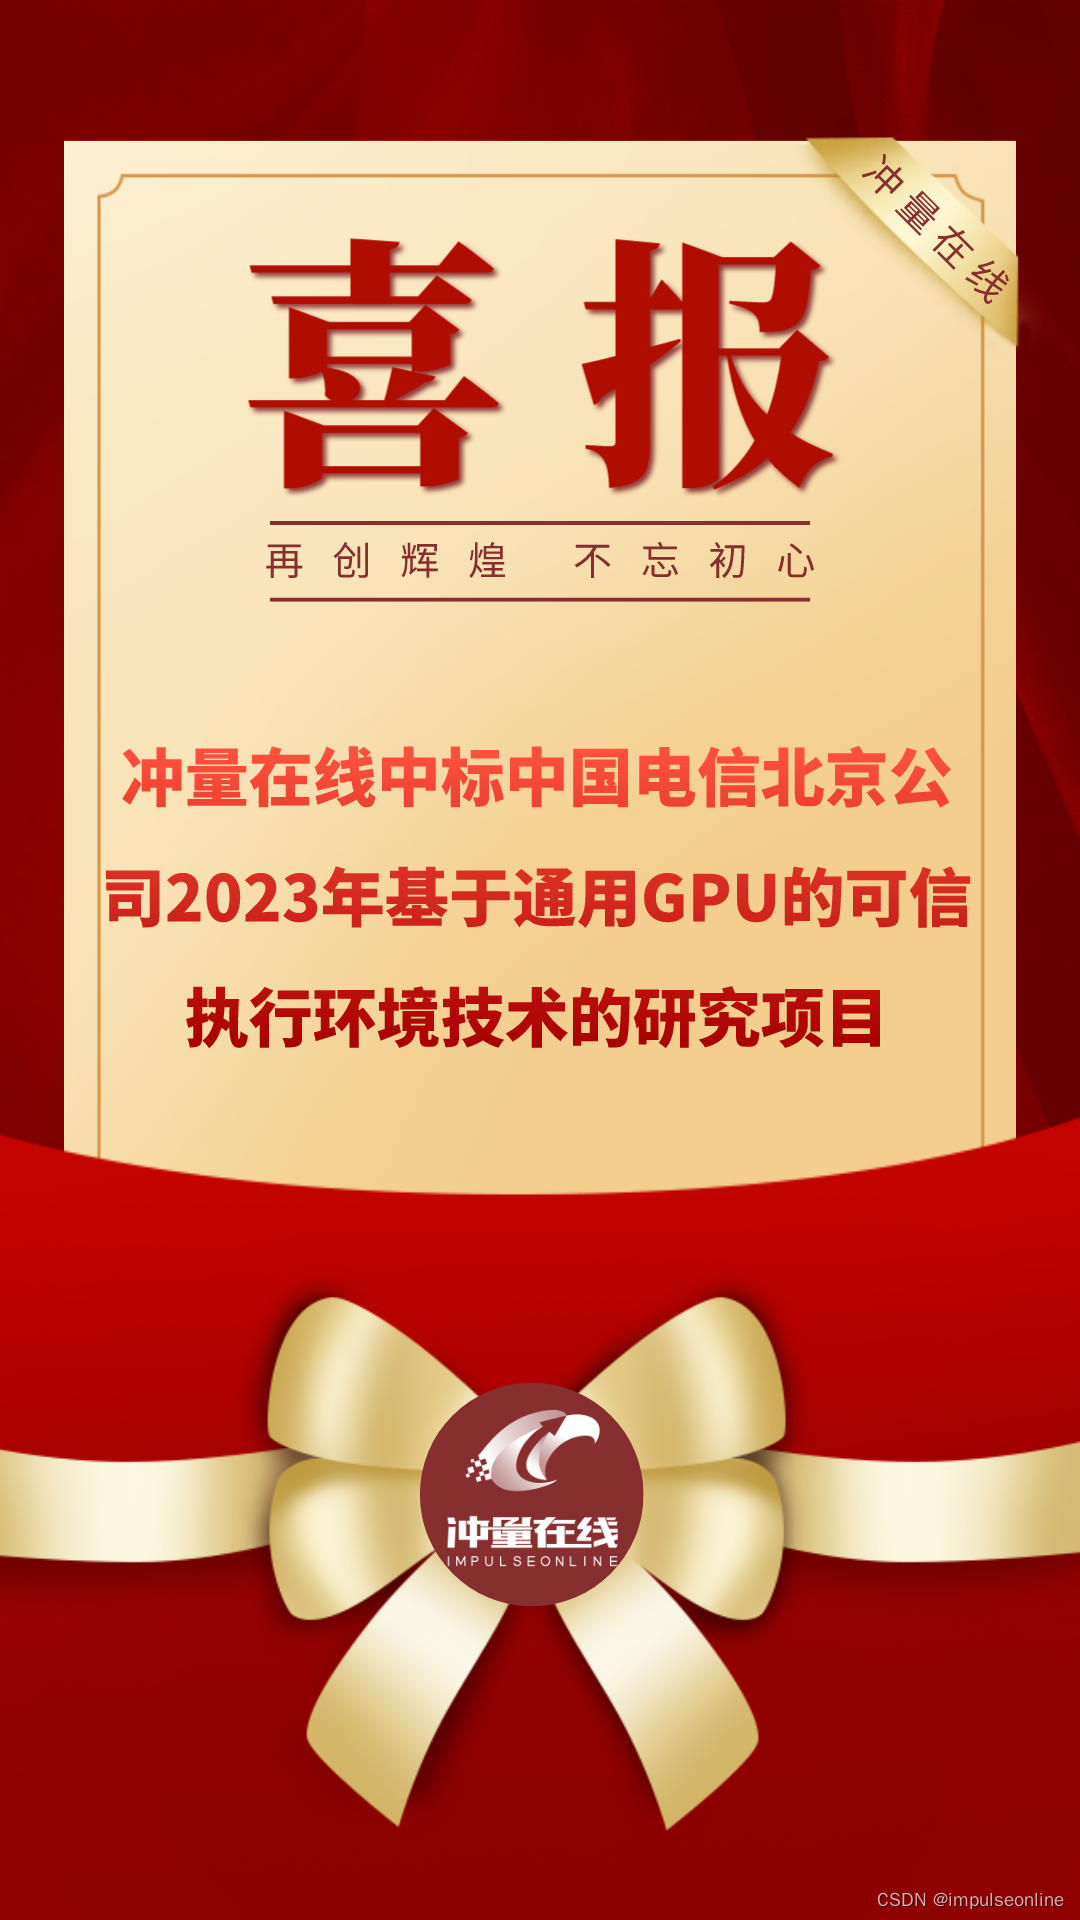 喜报！冲量在线中标中国电信北京公司2023年基于通用GPU的可信执行环境技术的研究项目